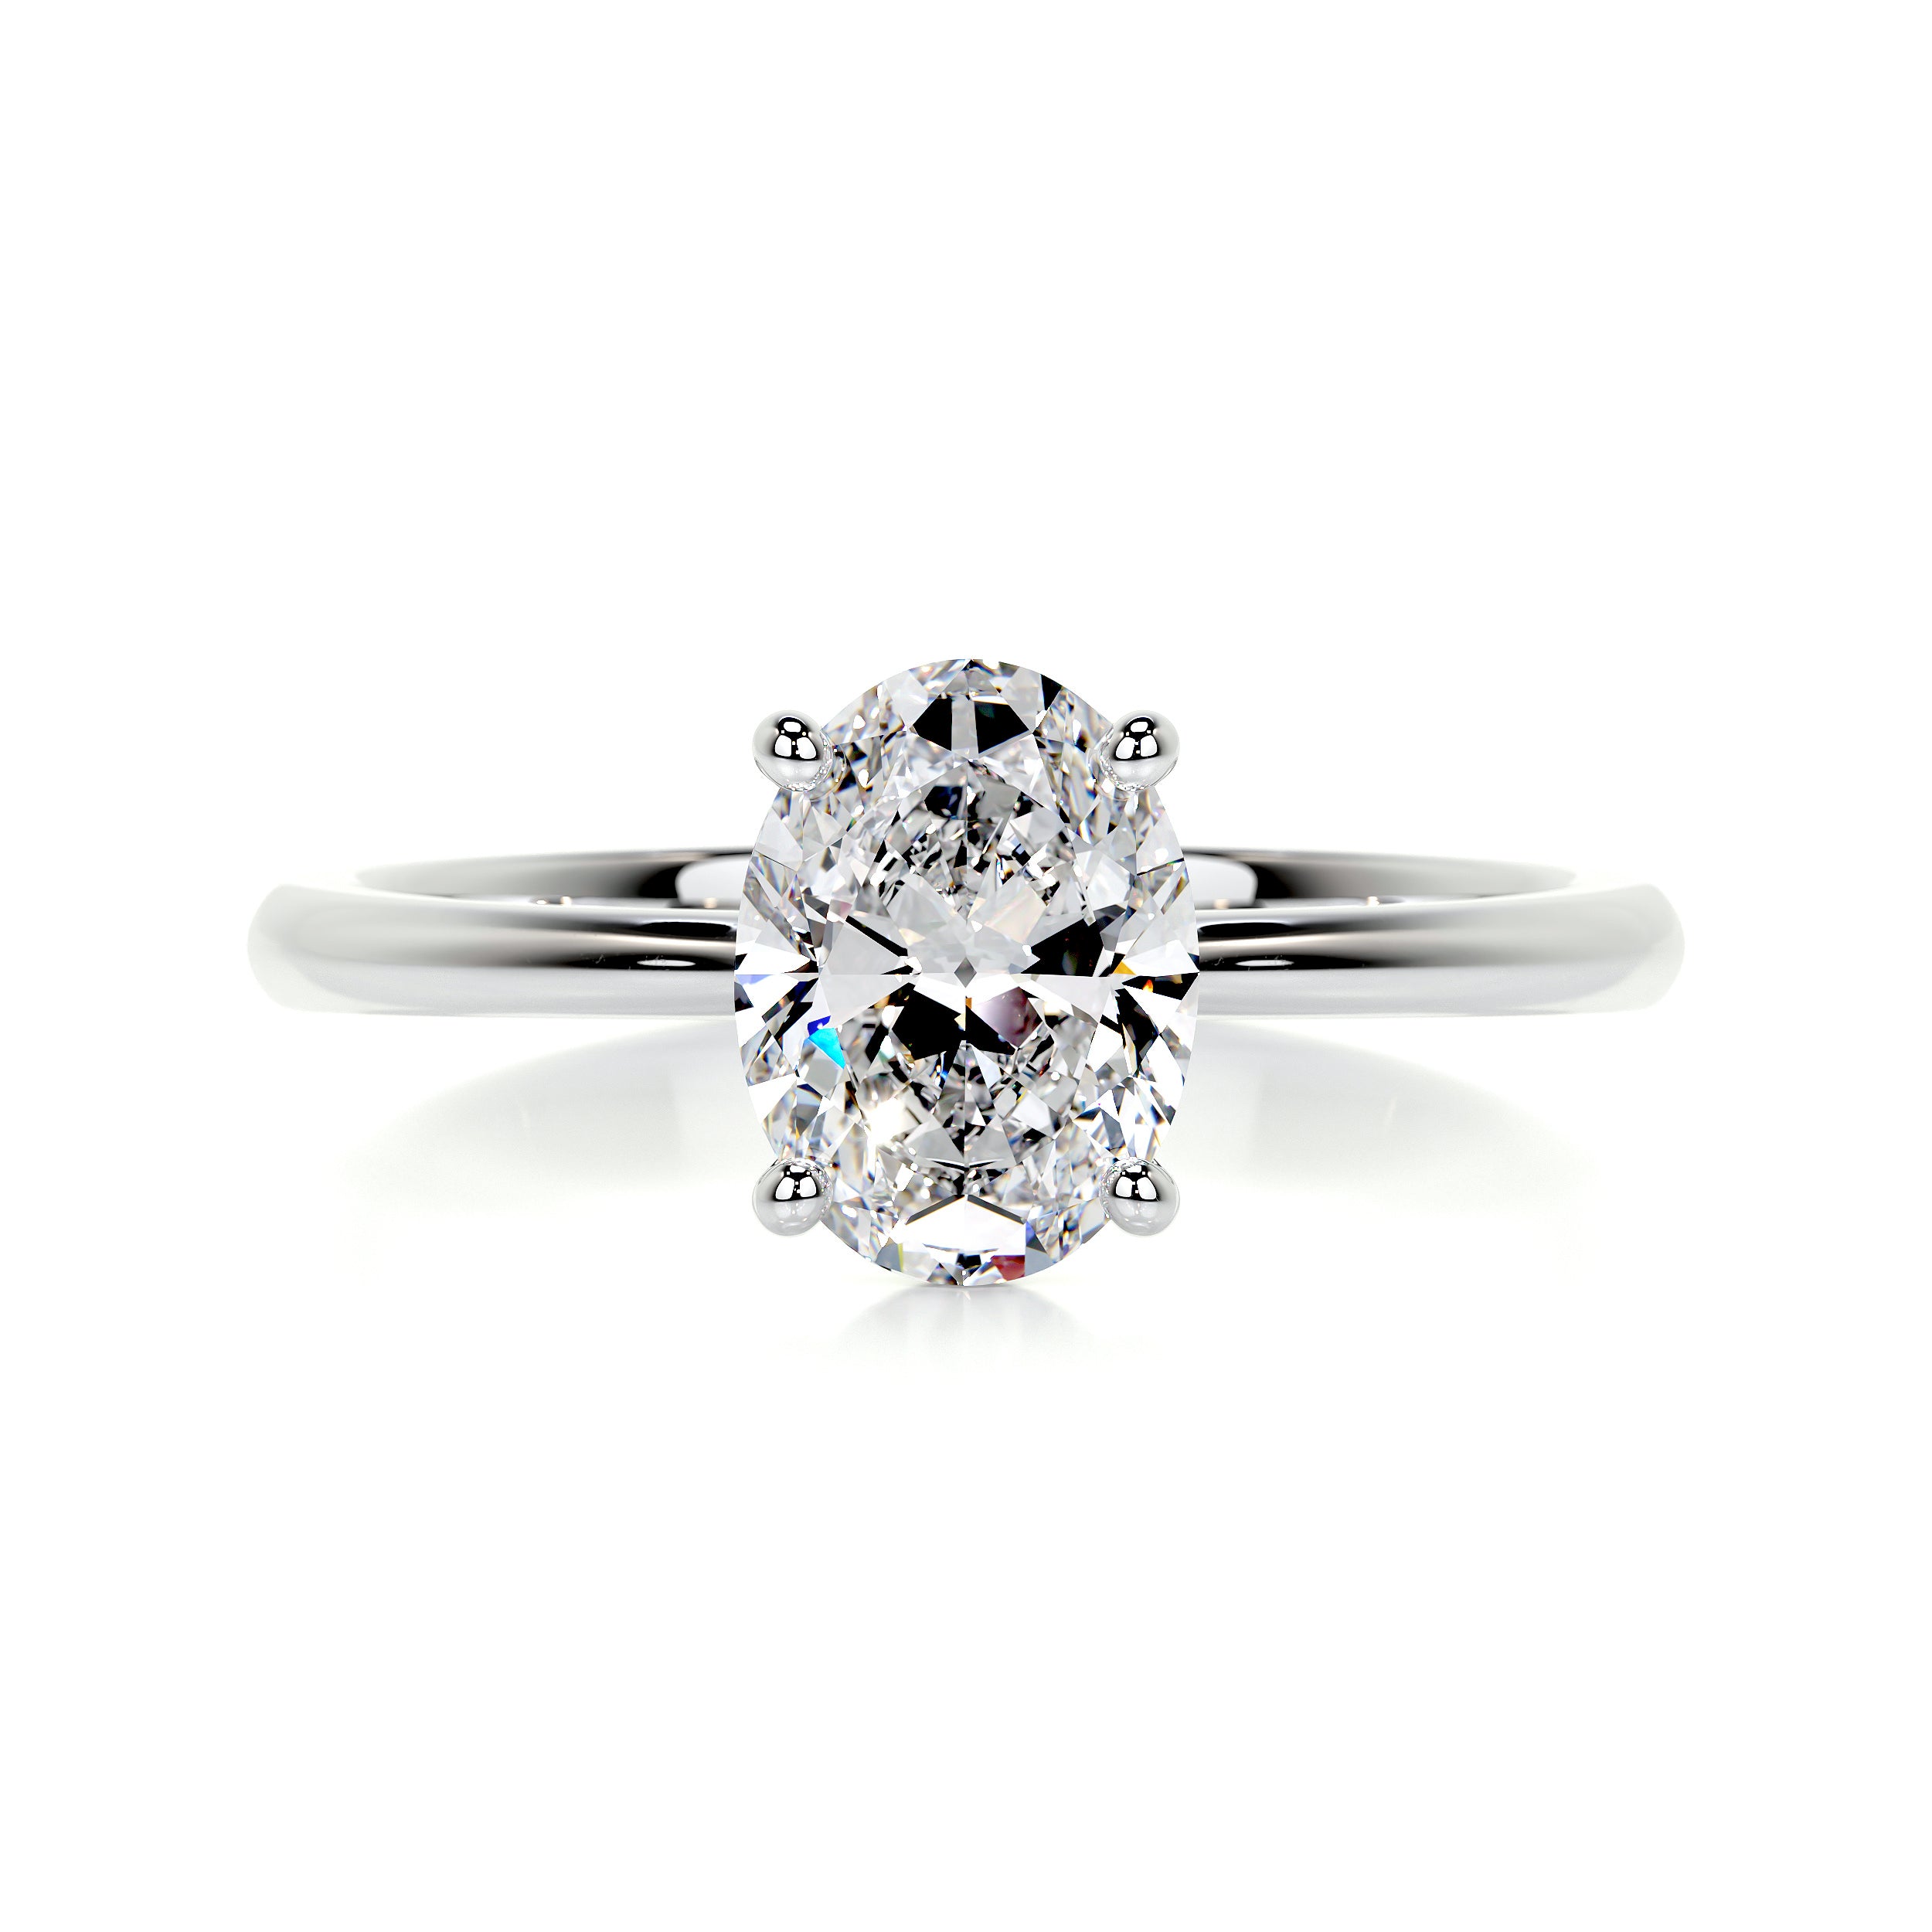 Julia Diamond Engagement Ring   (1 Carat) -14K White Gold